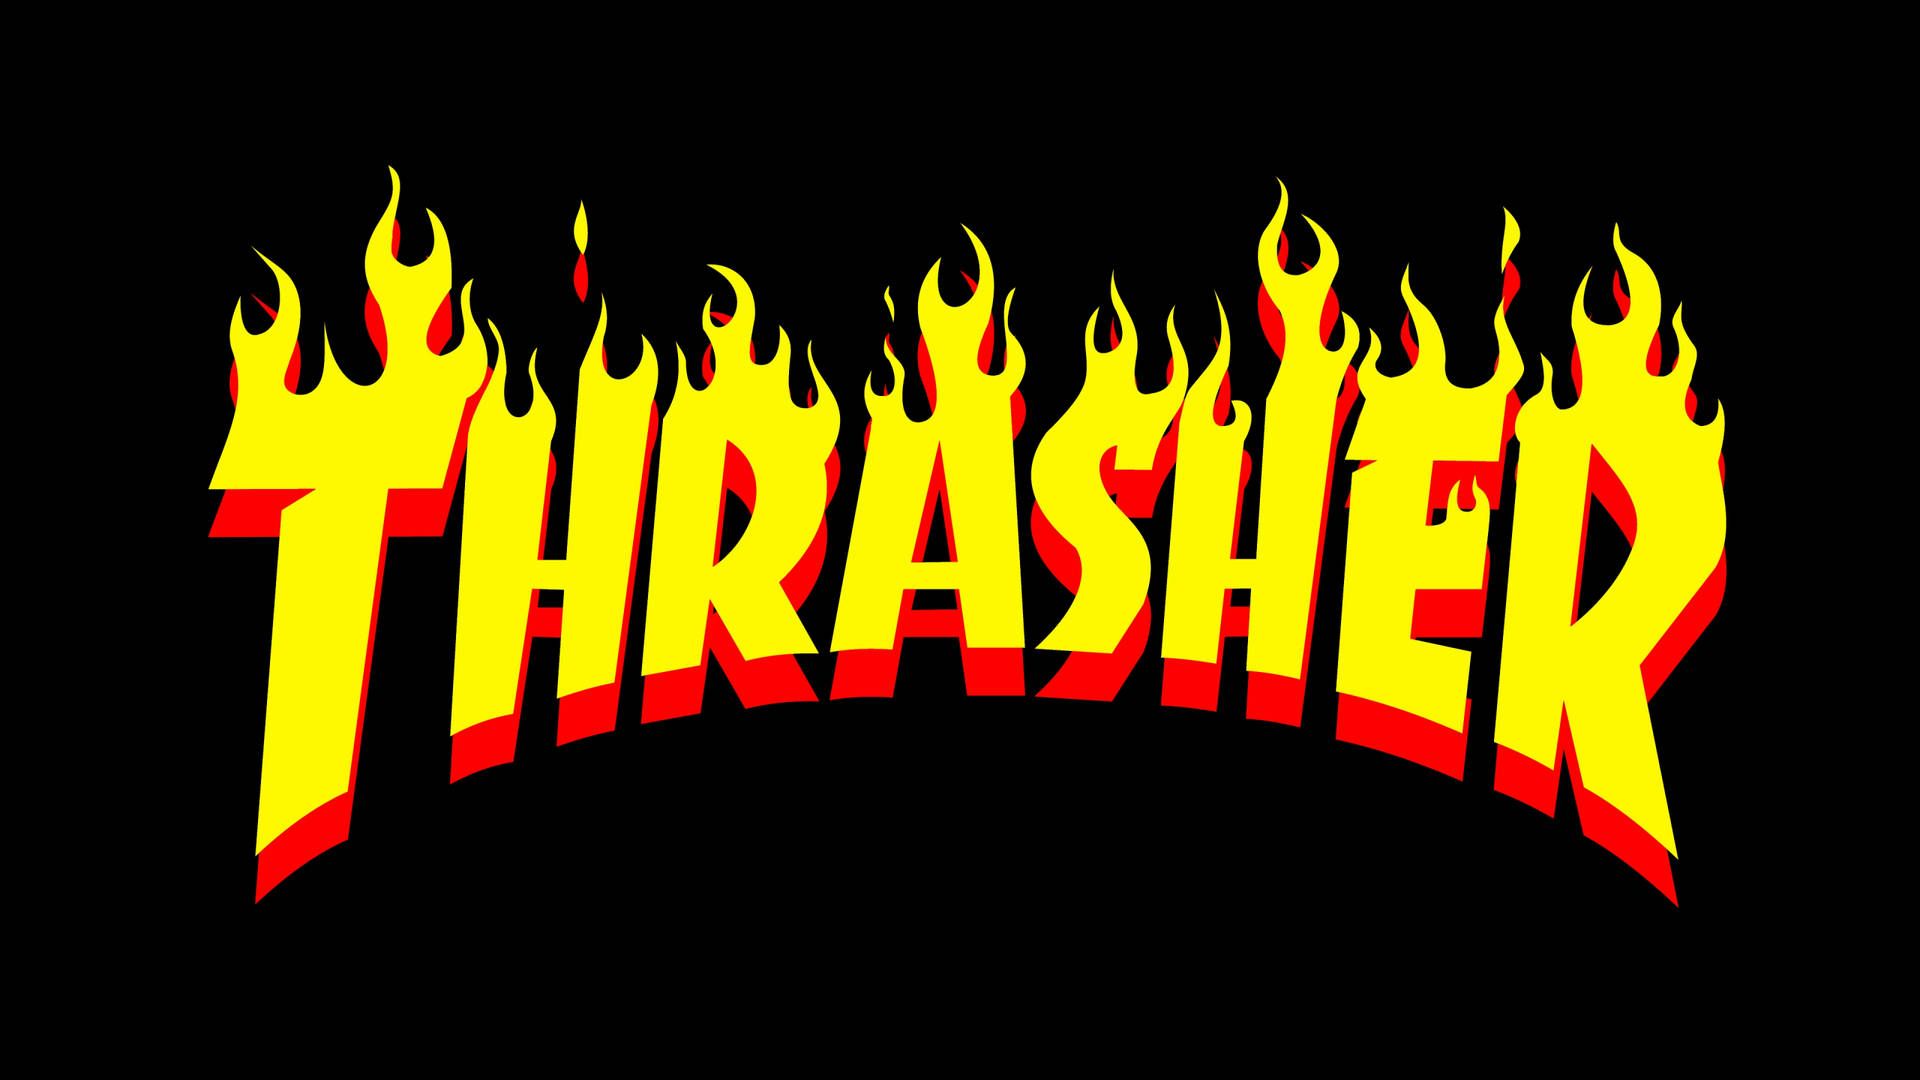 Free Thrasher Wallpaper Downloads, Thrasher Wallpaper for FREE